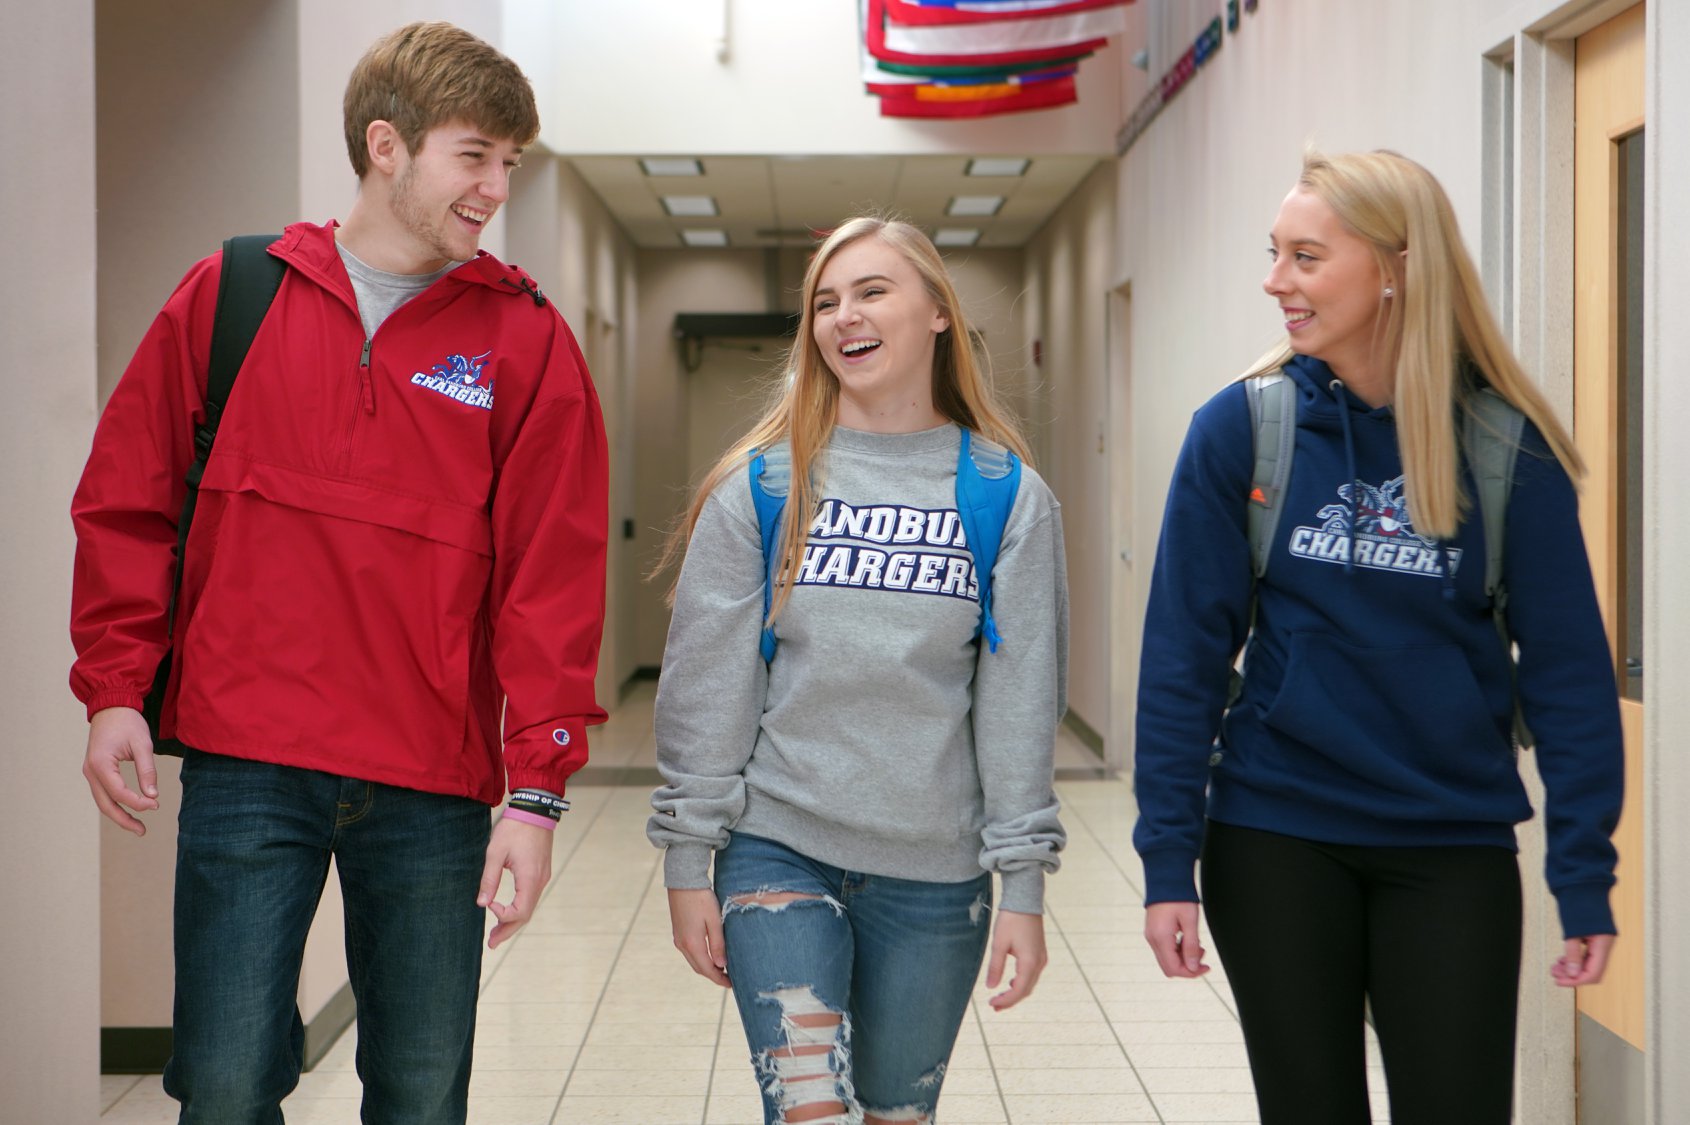 Three Students walking down a hallway talking.